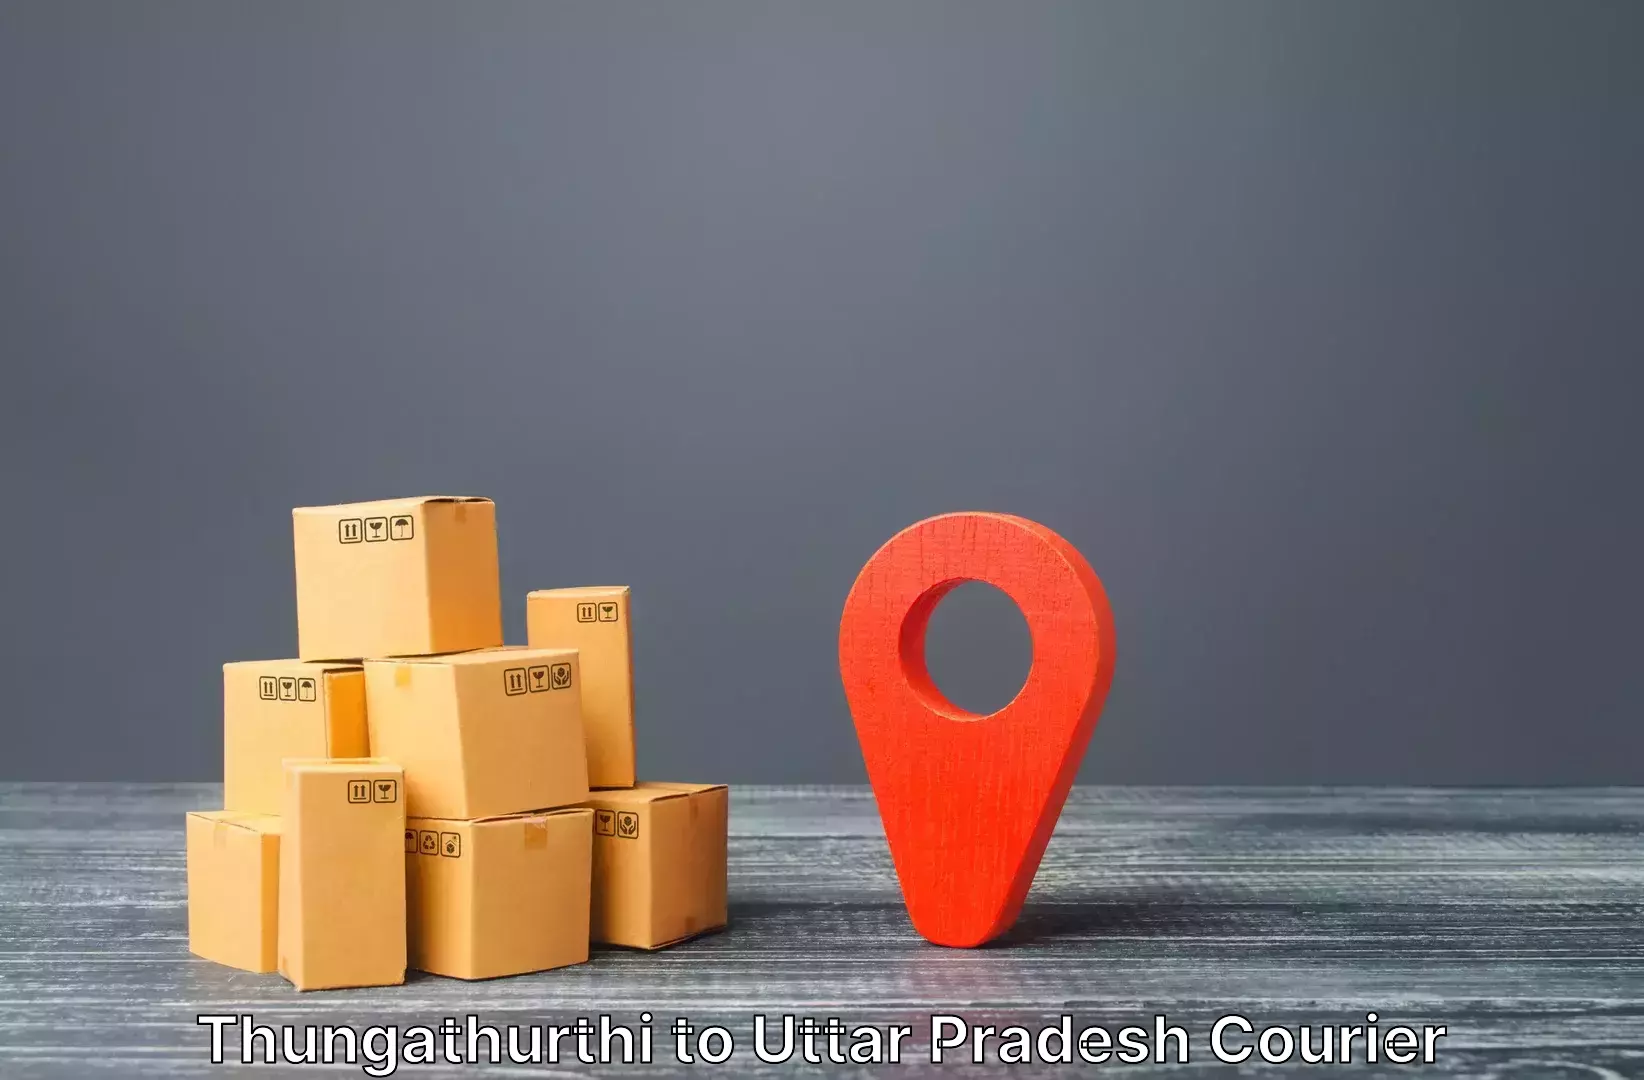 Luggage delivery logistics in Thungathurthi to Moradabad